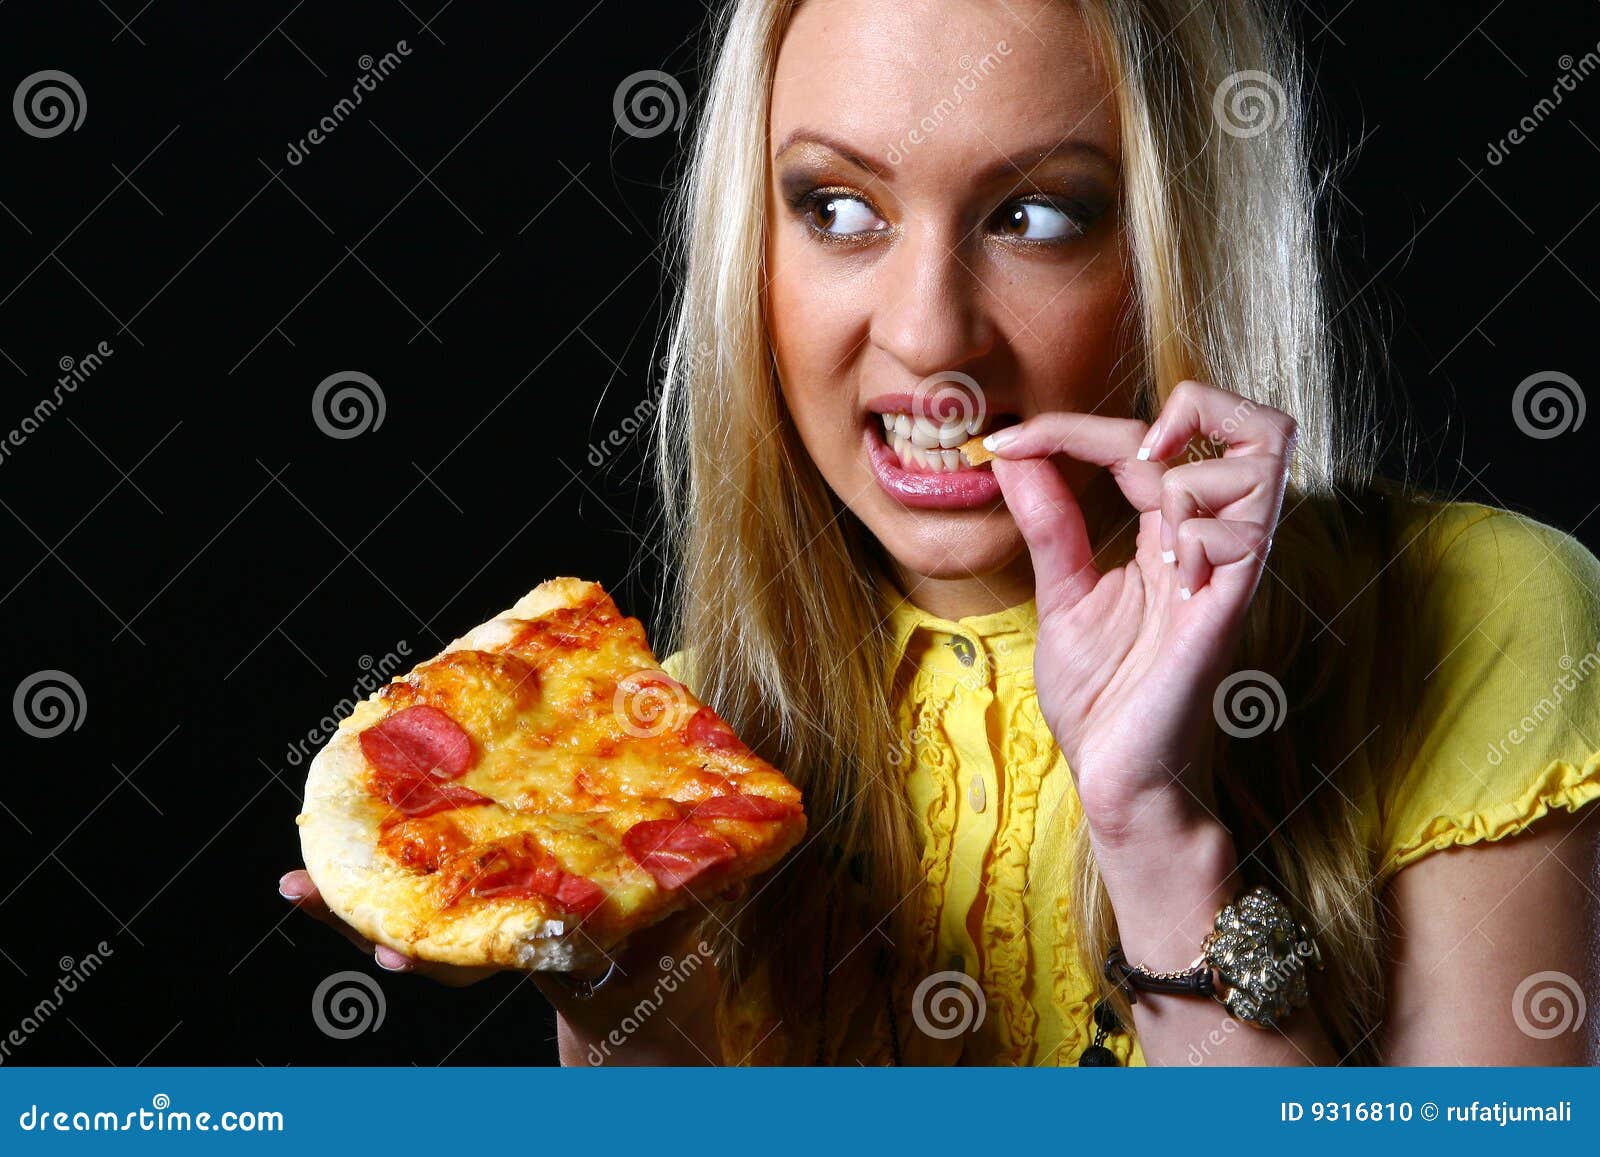 фотошоп девушка из пиццы фото 114